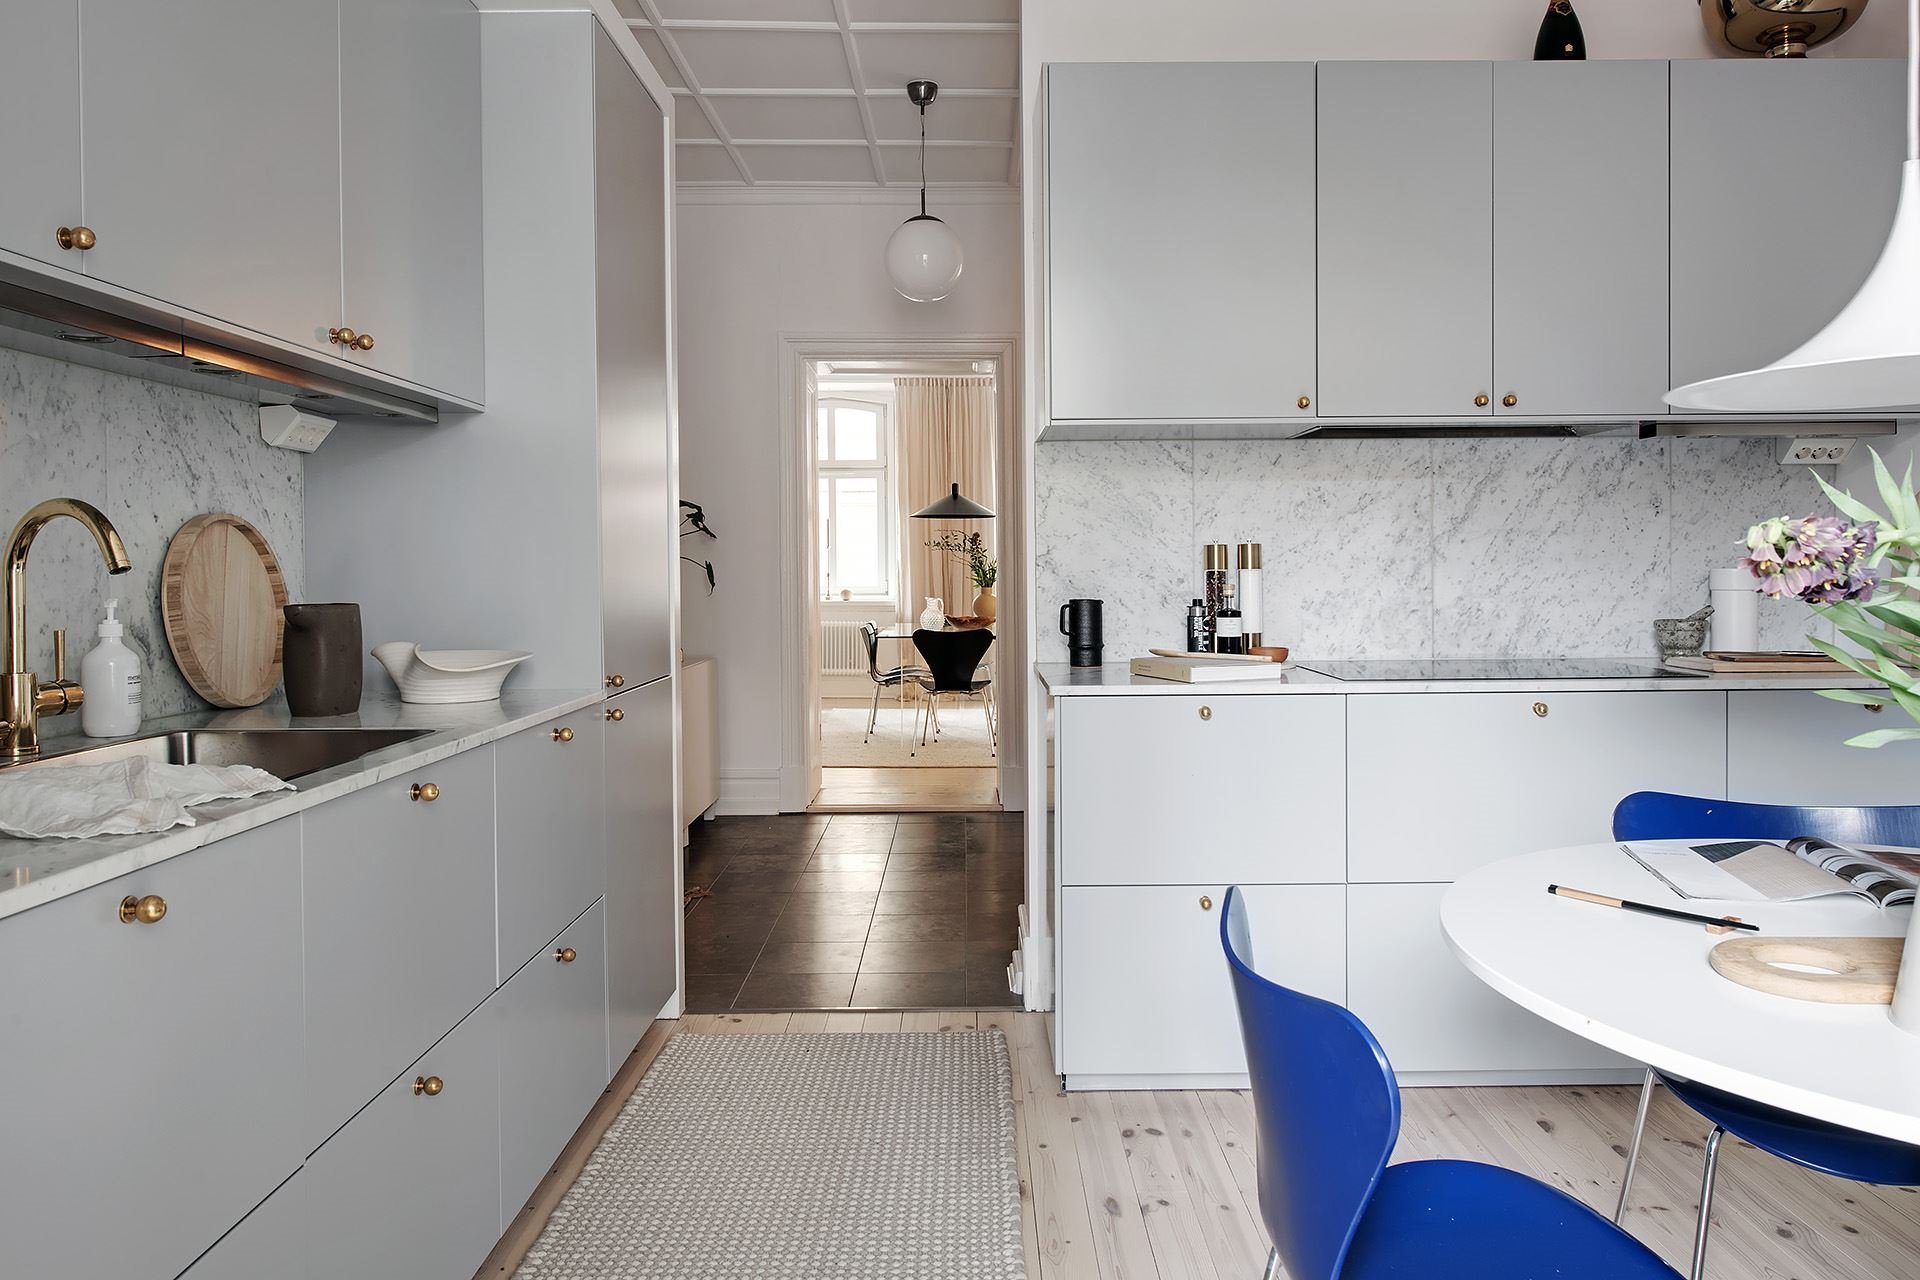 Piso con decoracion nordica moderna y paredes pintadas en color gris cocina comedor con sillas azules y lampara blanca